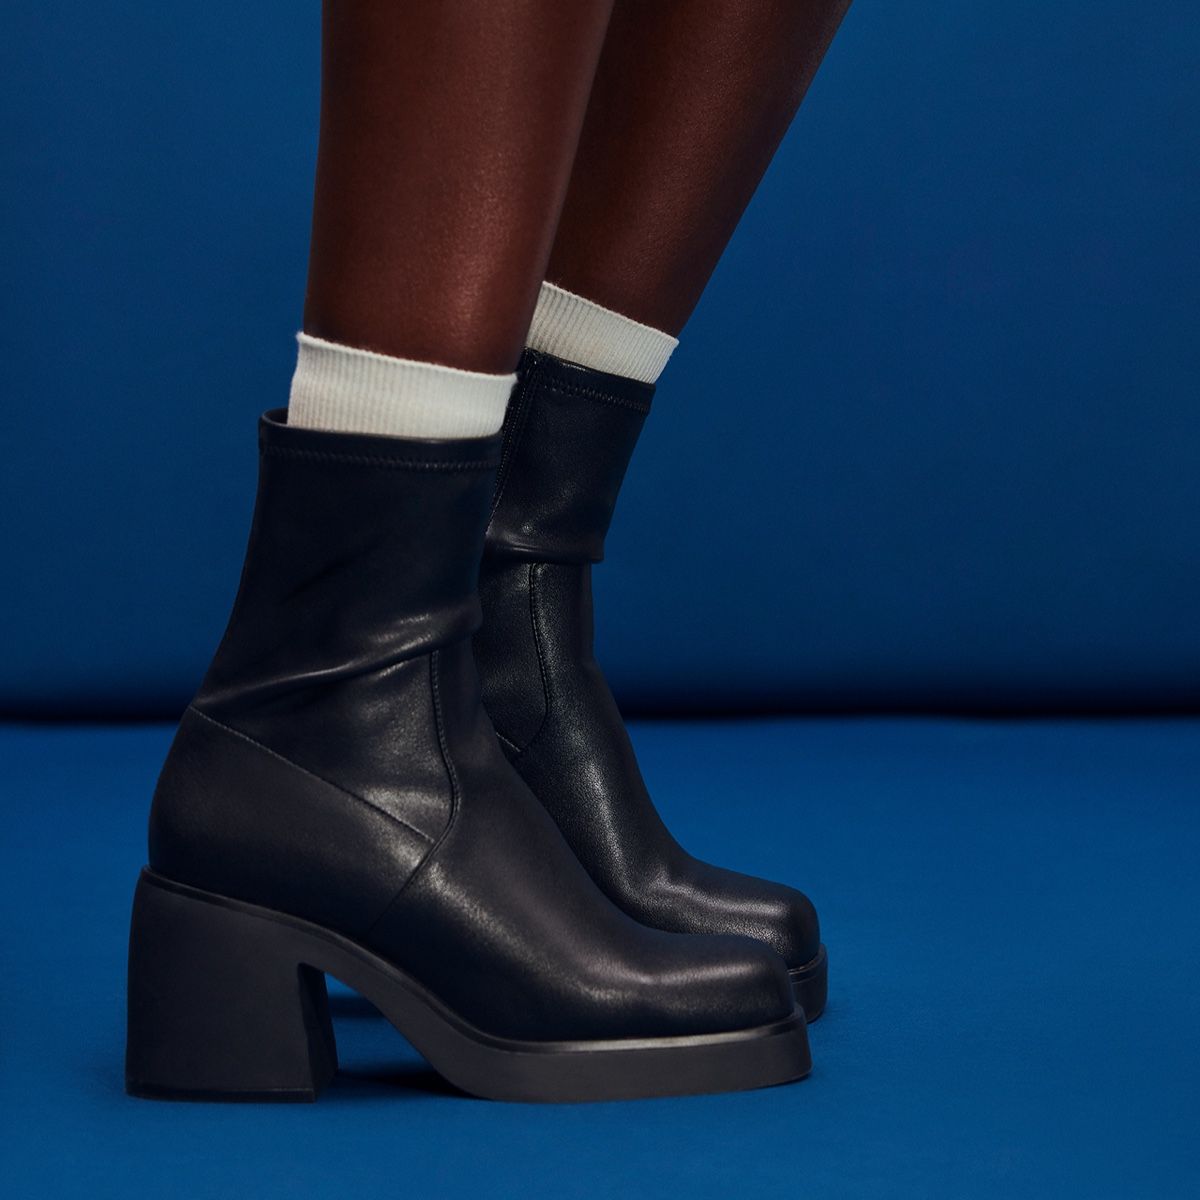 Persona Black Women's Casual boots | ALDO Canada